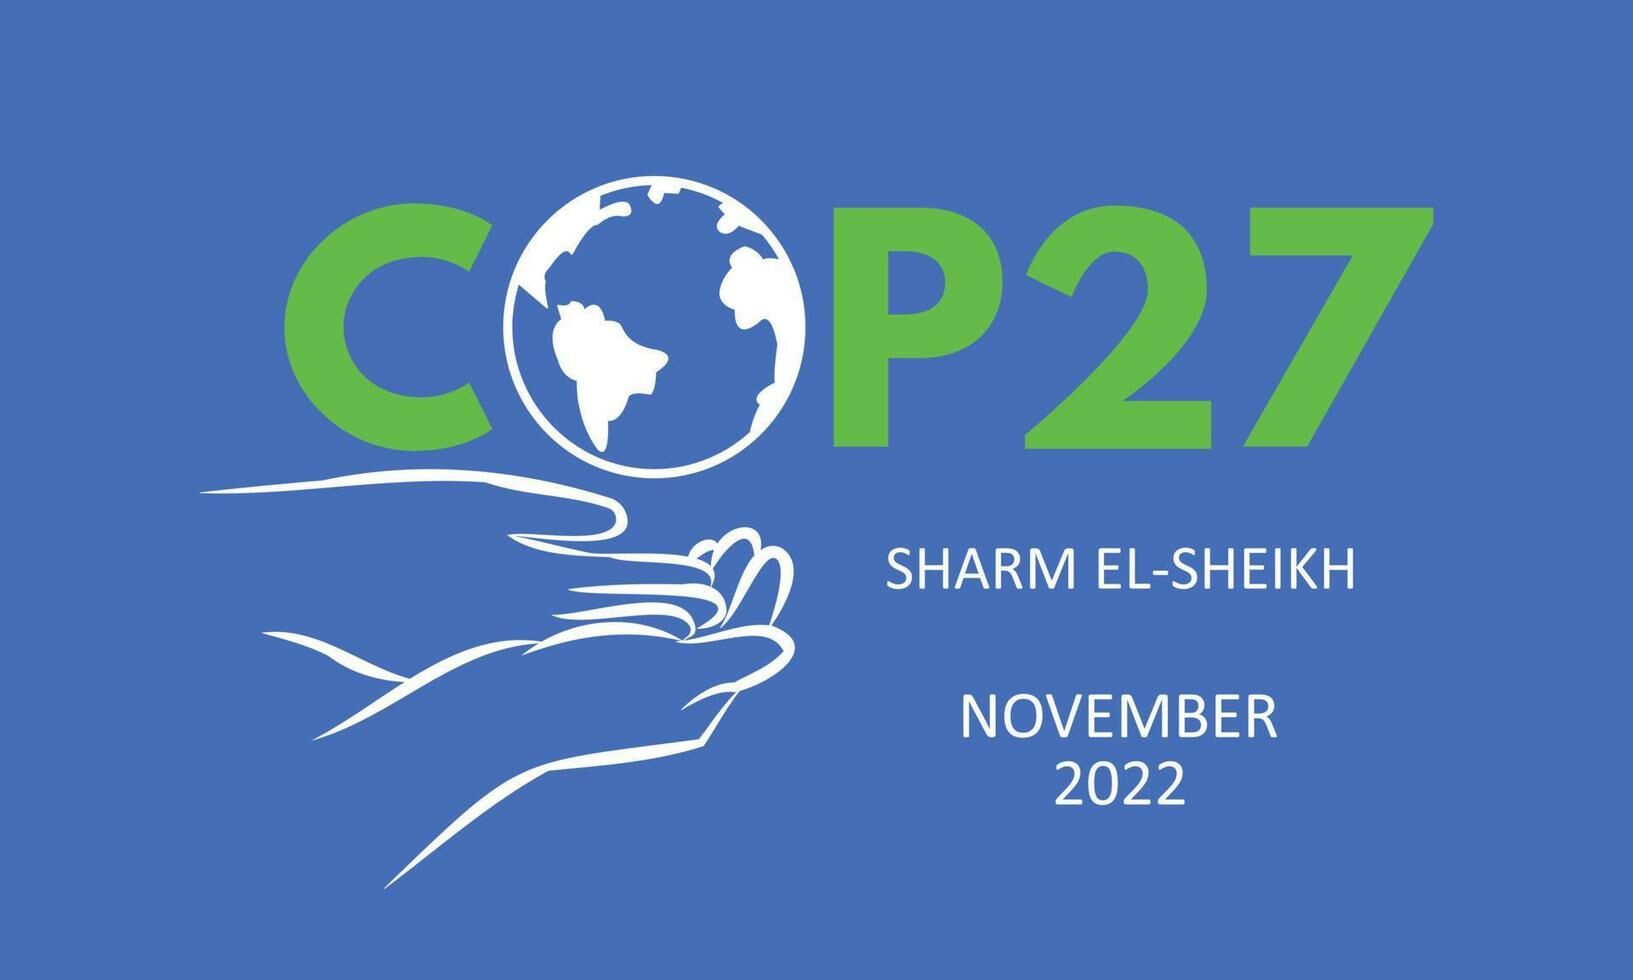 Qué pueden esperar los inversores de la COP27 según Schroders